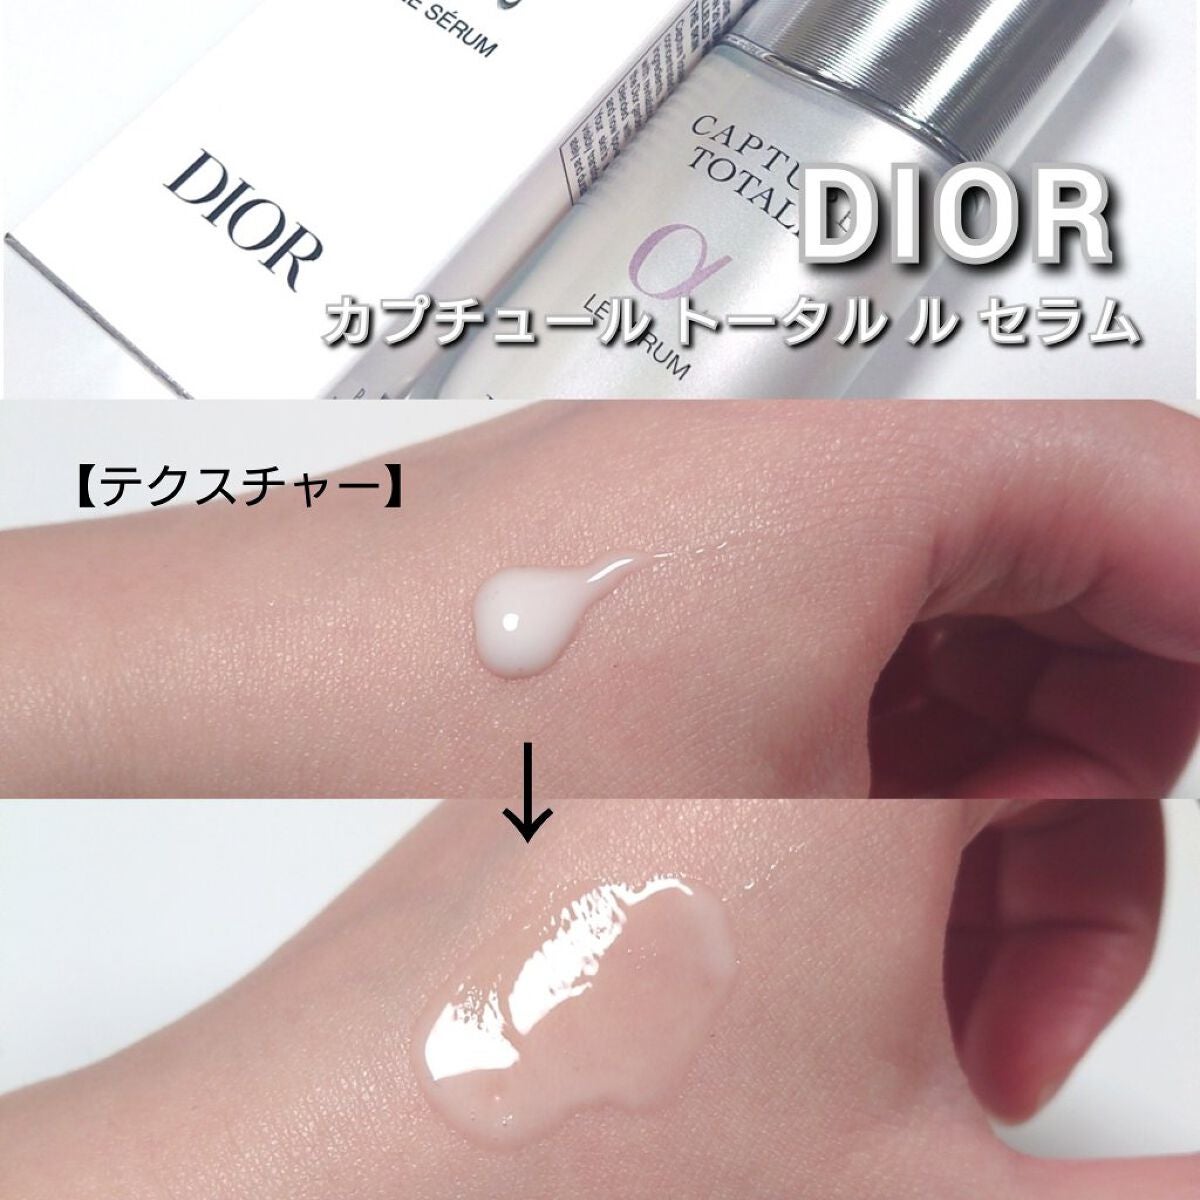 【美容液】【Dior】カプチュール トータル セラム